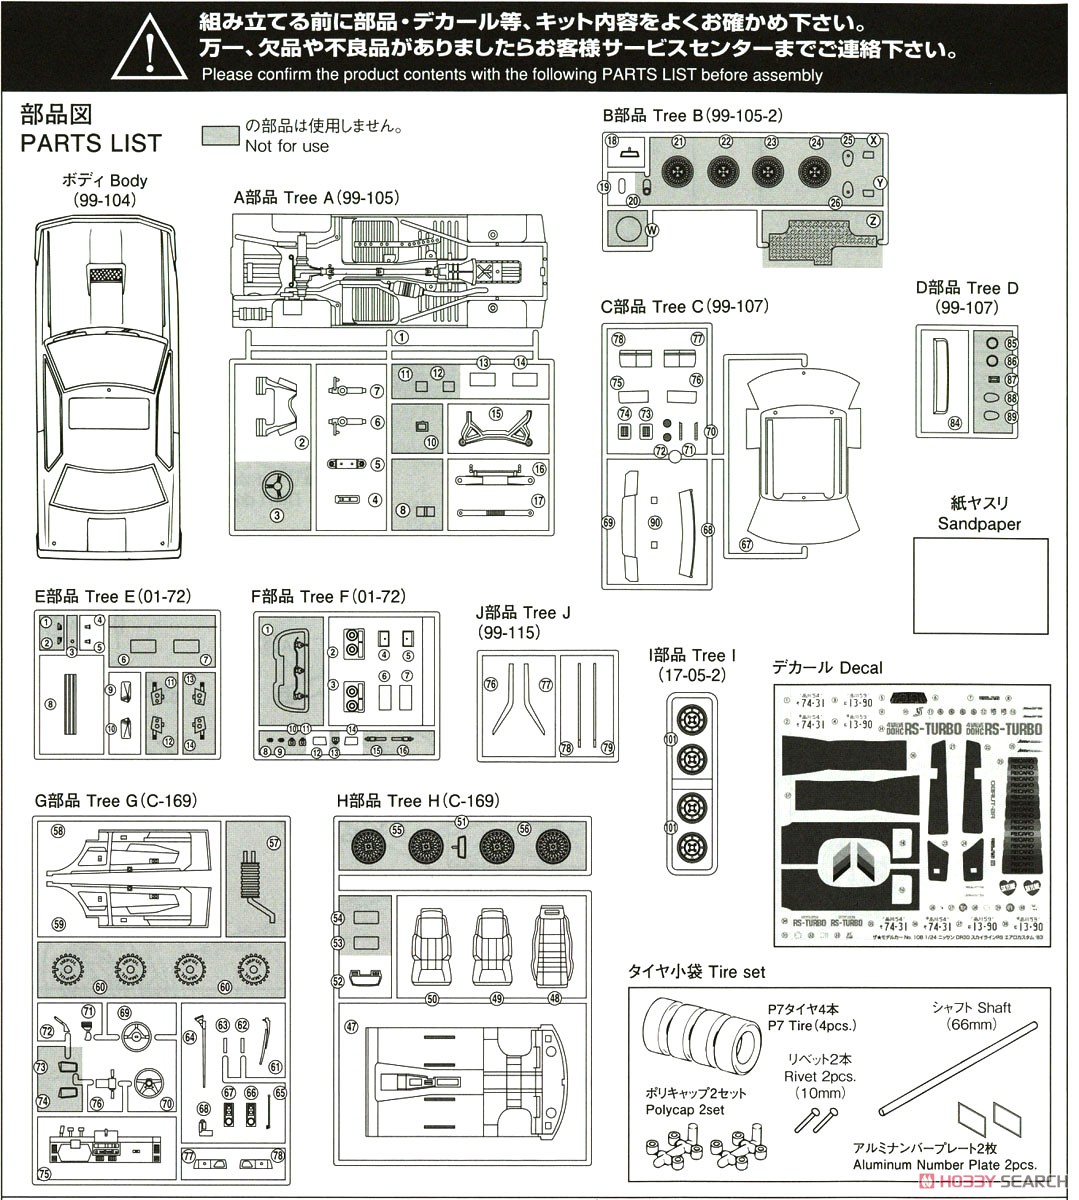 ニッサン DR30 スカイラインRS エアロカスタム `83 (プラモデル) 設計図6